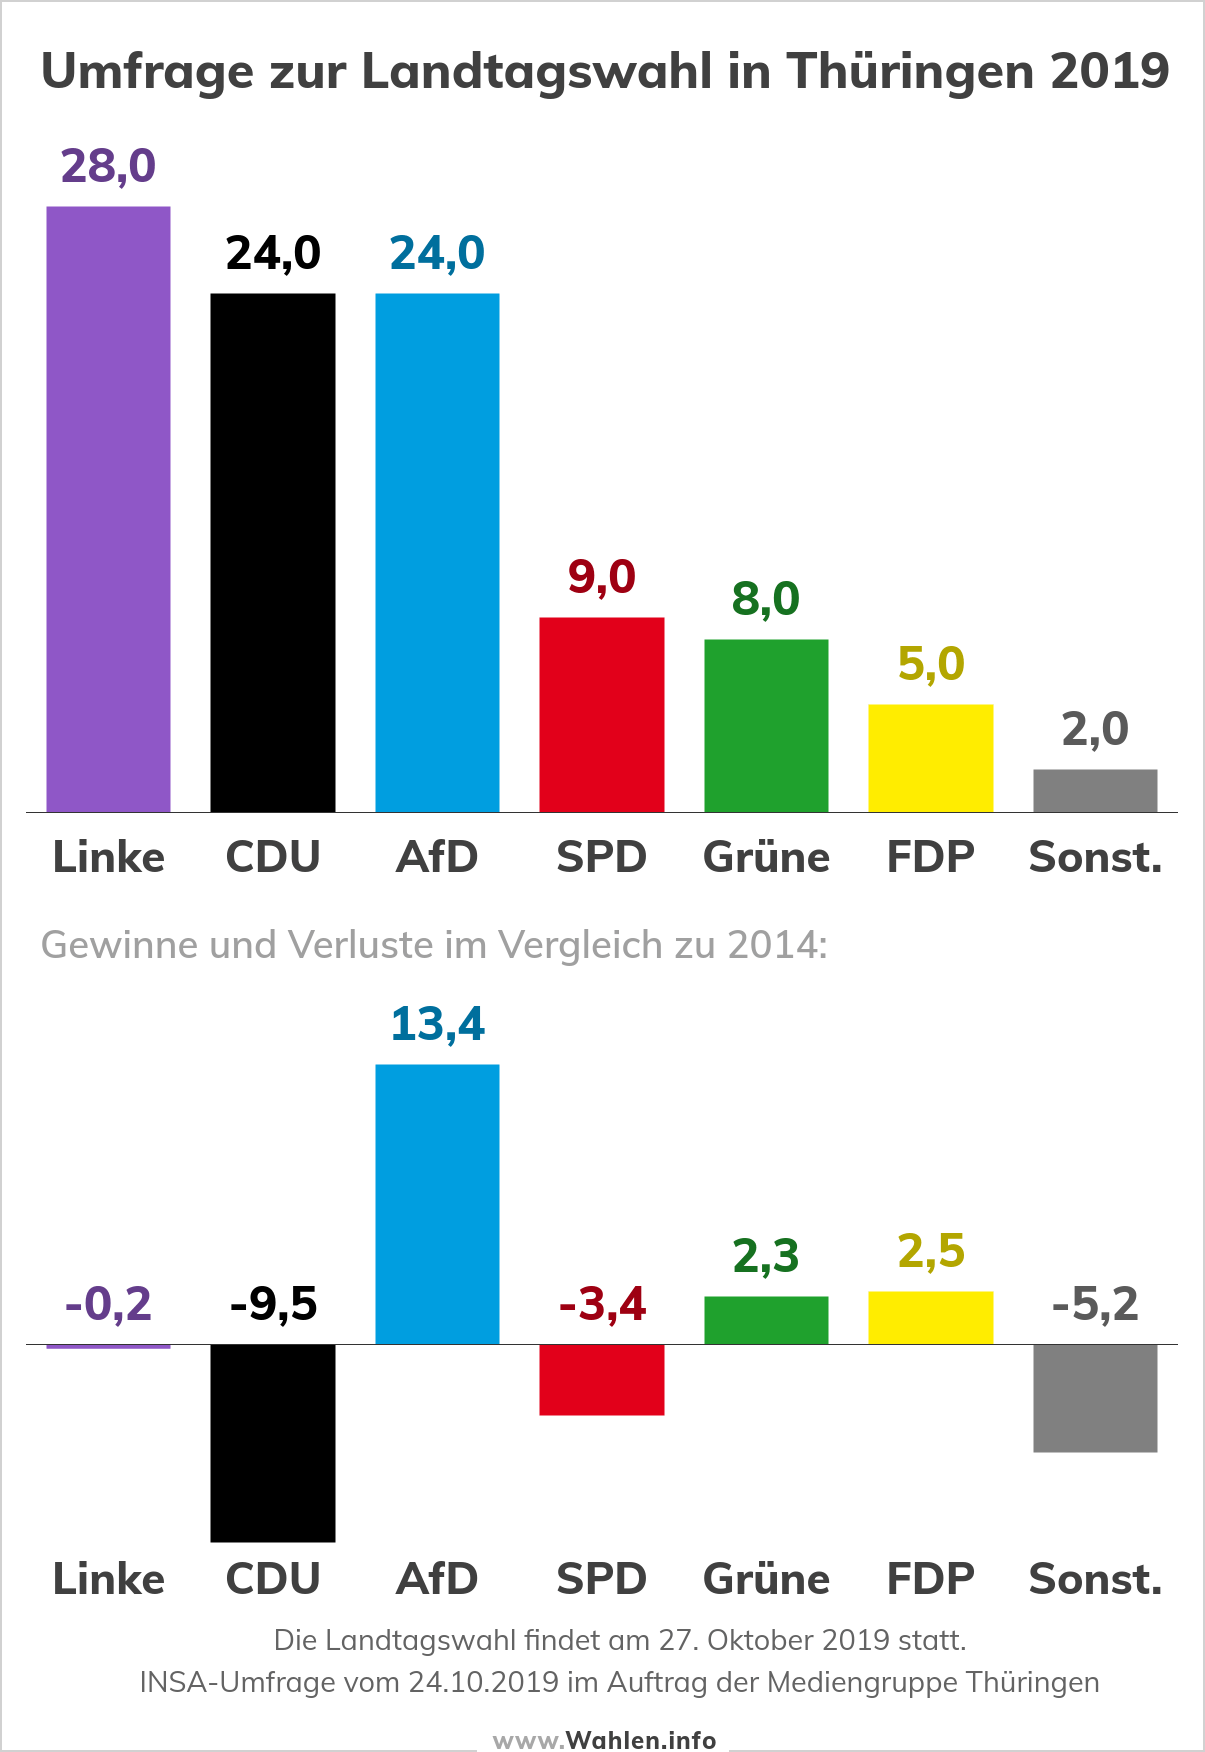 Landtagswahl in Thüringen - Umfrage